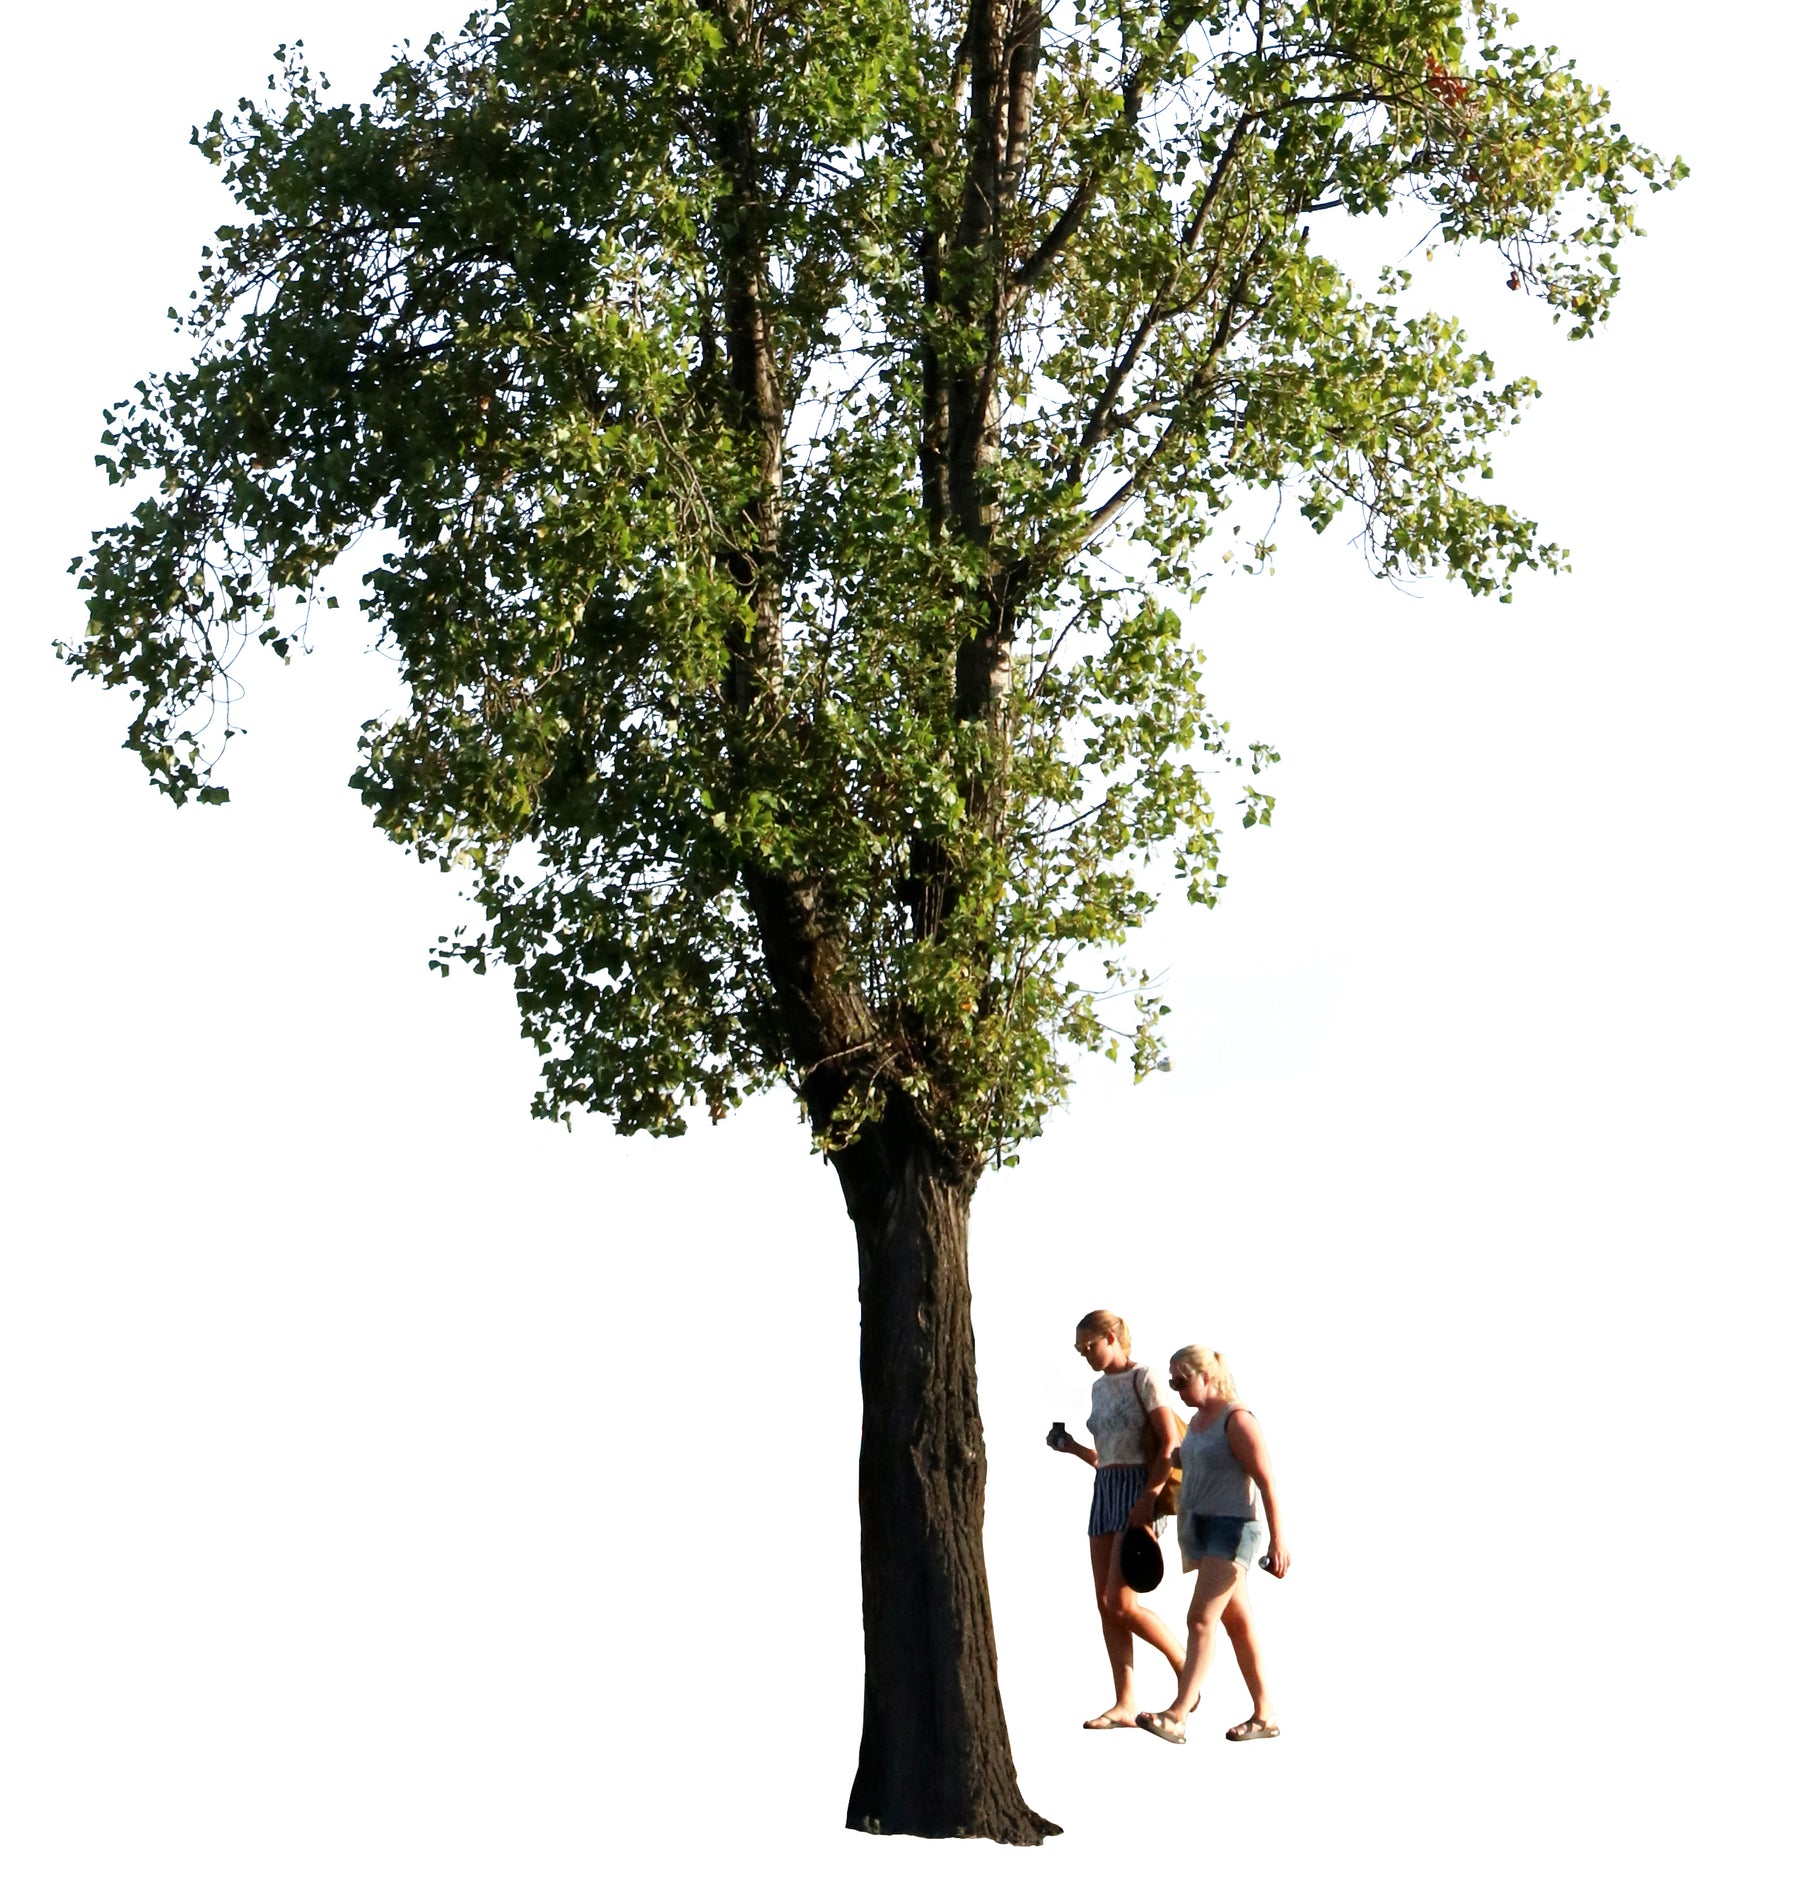 Populus nigra + People II - cutout trees